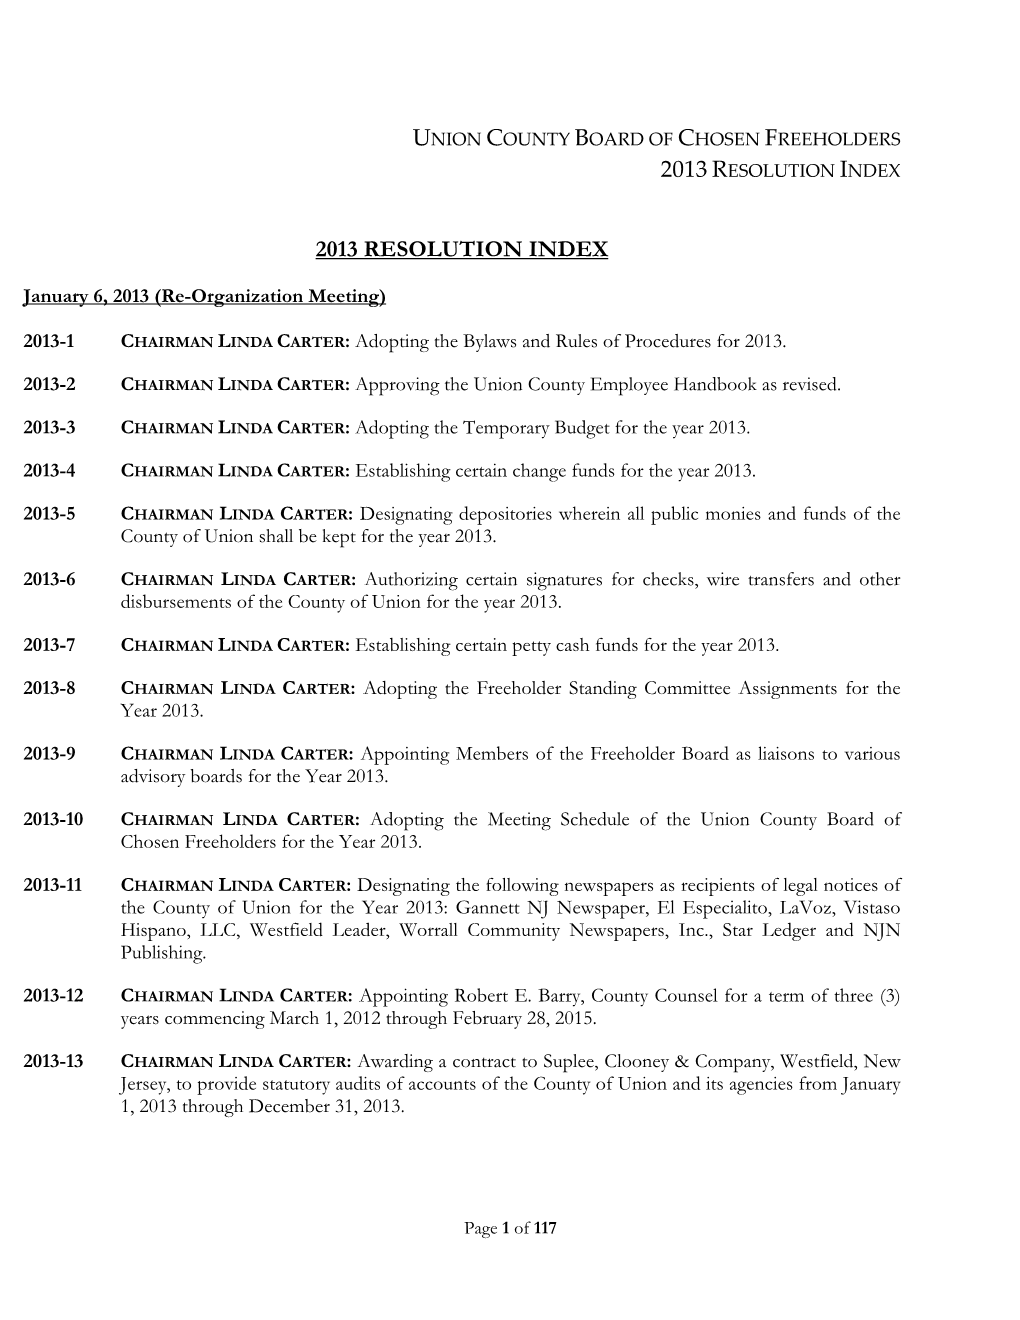 2013 Resolution Index